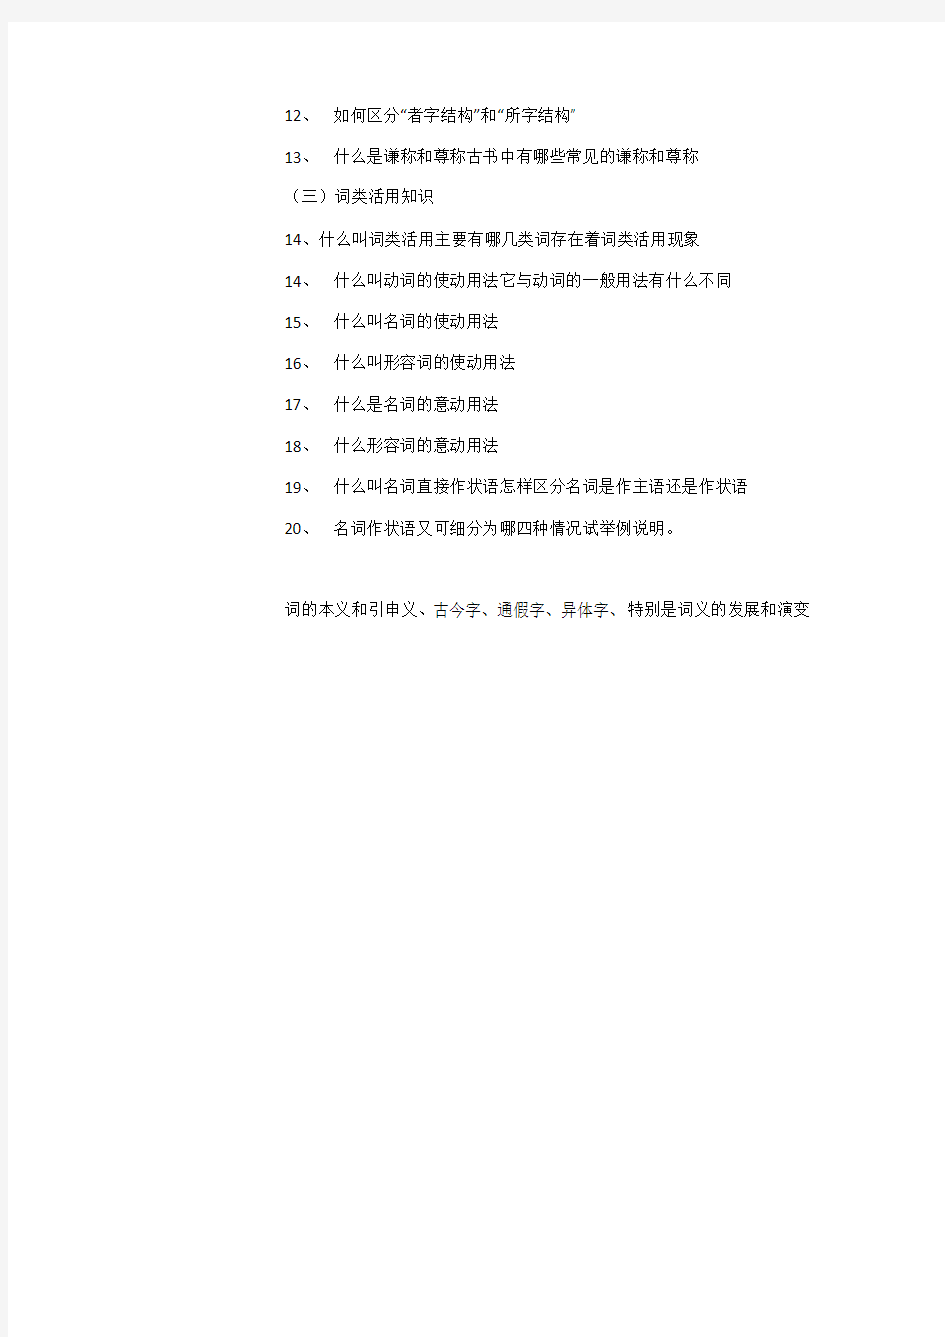 王力古代汉语第一册复习提纲